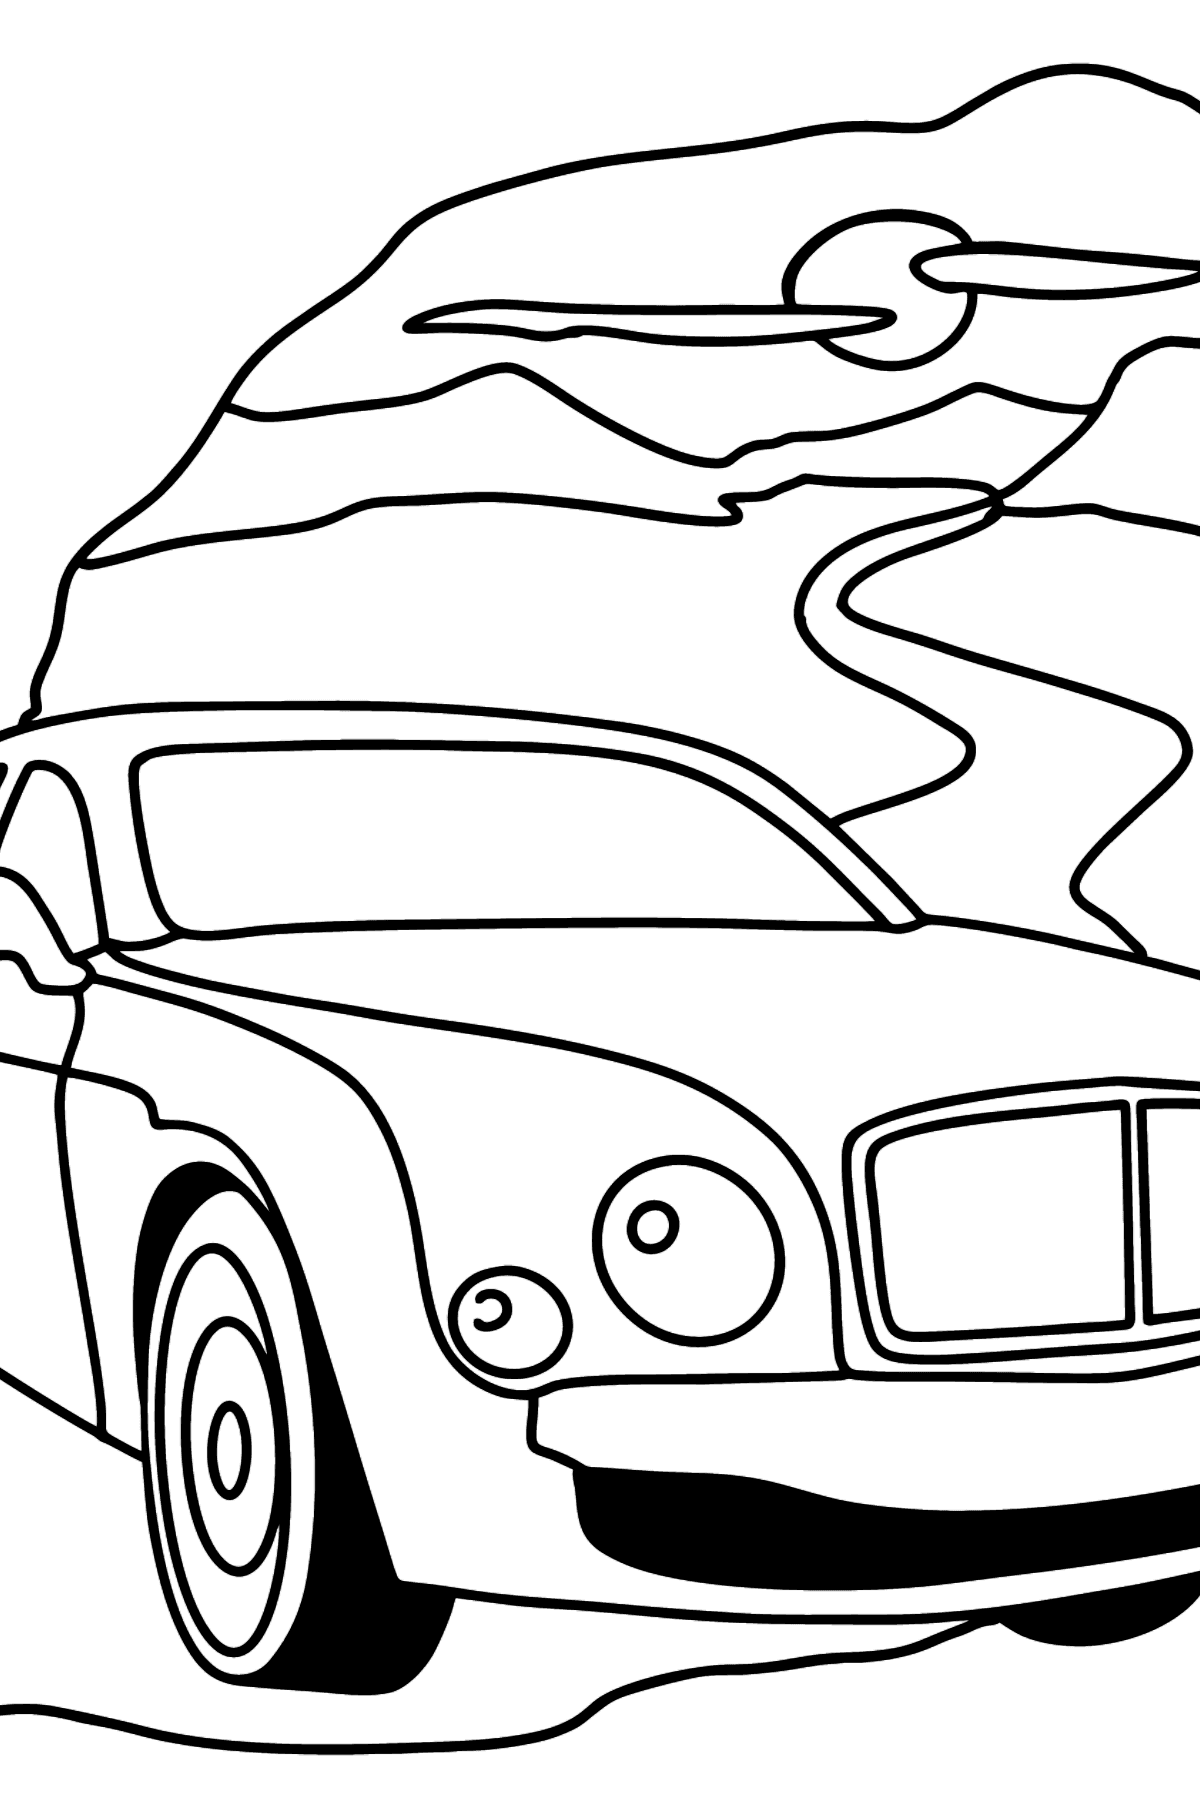 Boyama sayfası Bentley Mulsanne araba - Boyamalar çocuklar için